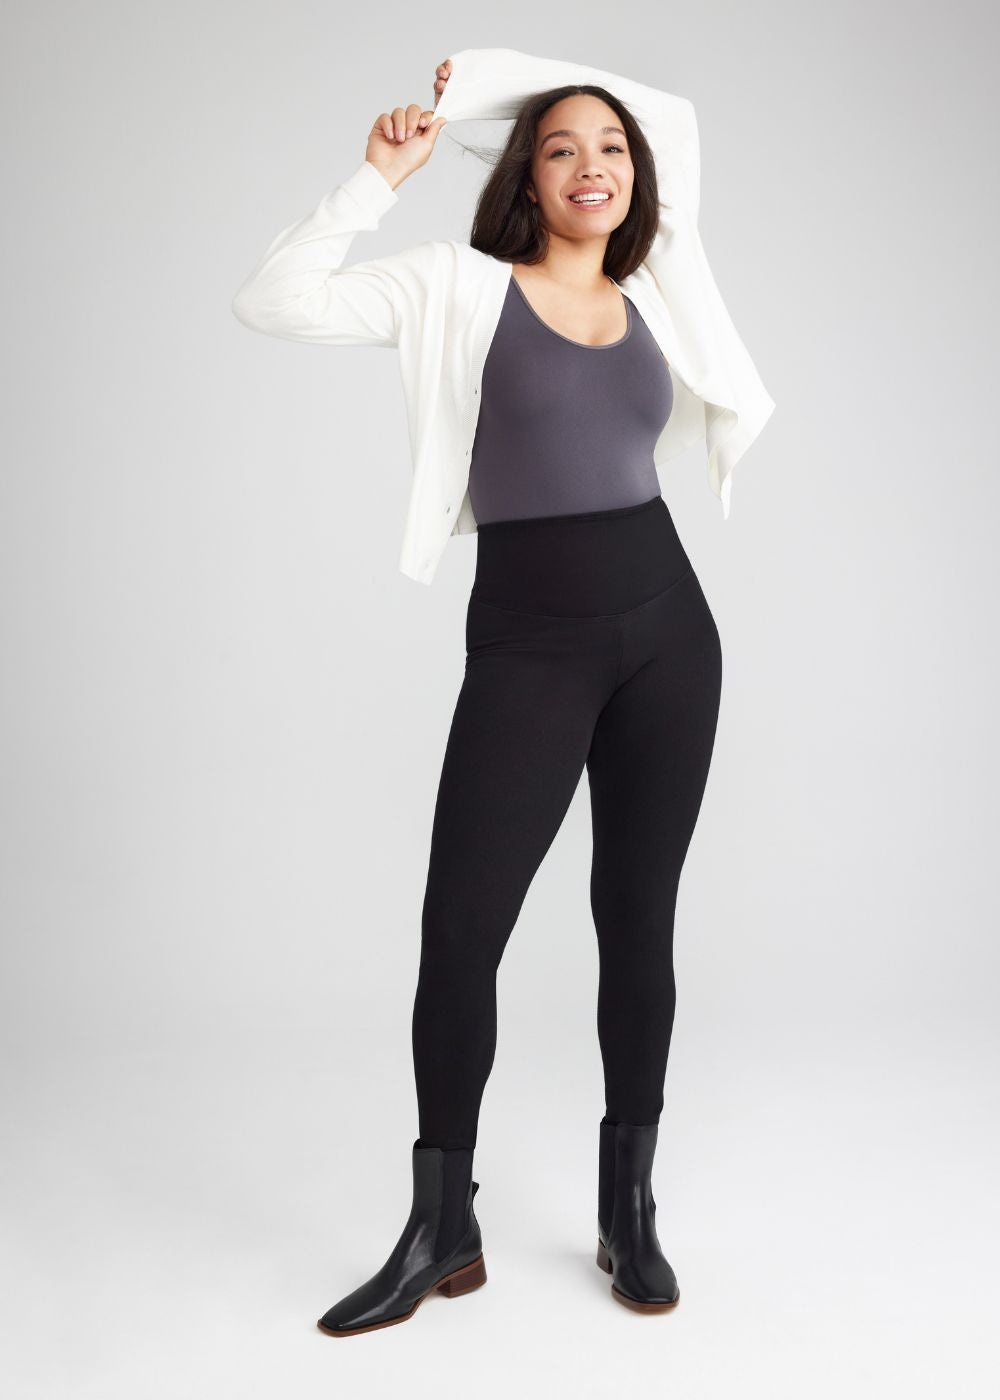 Lululemon seamless leggings size 4 - $38 - From Sandys